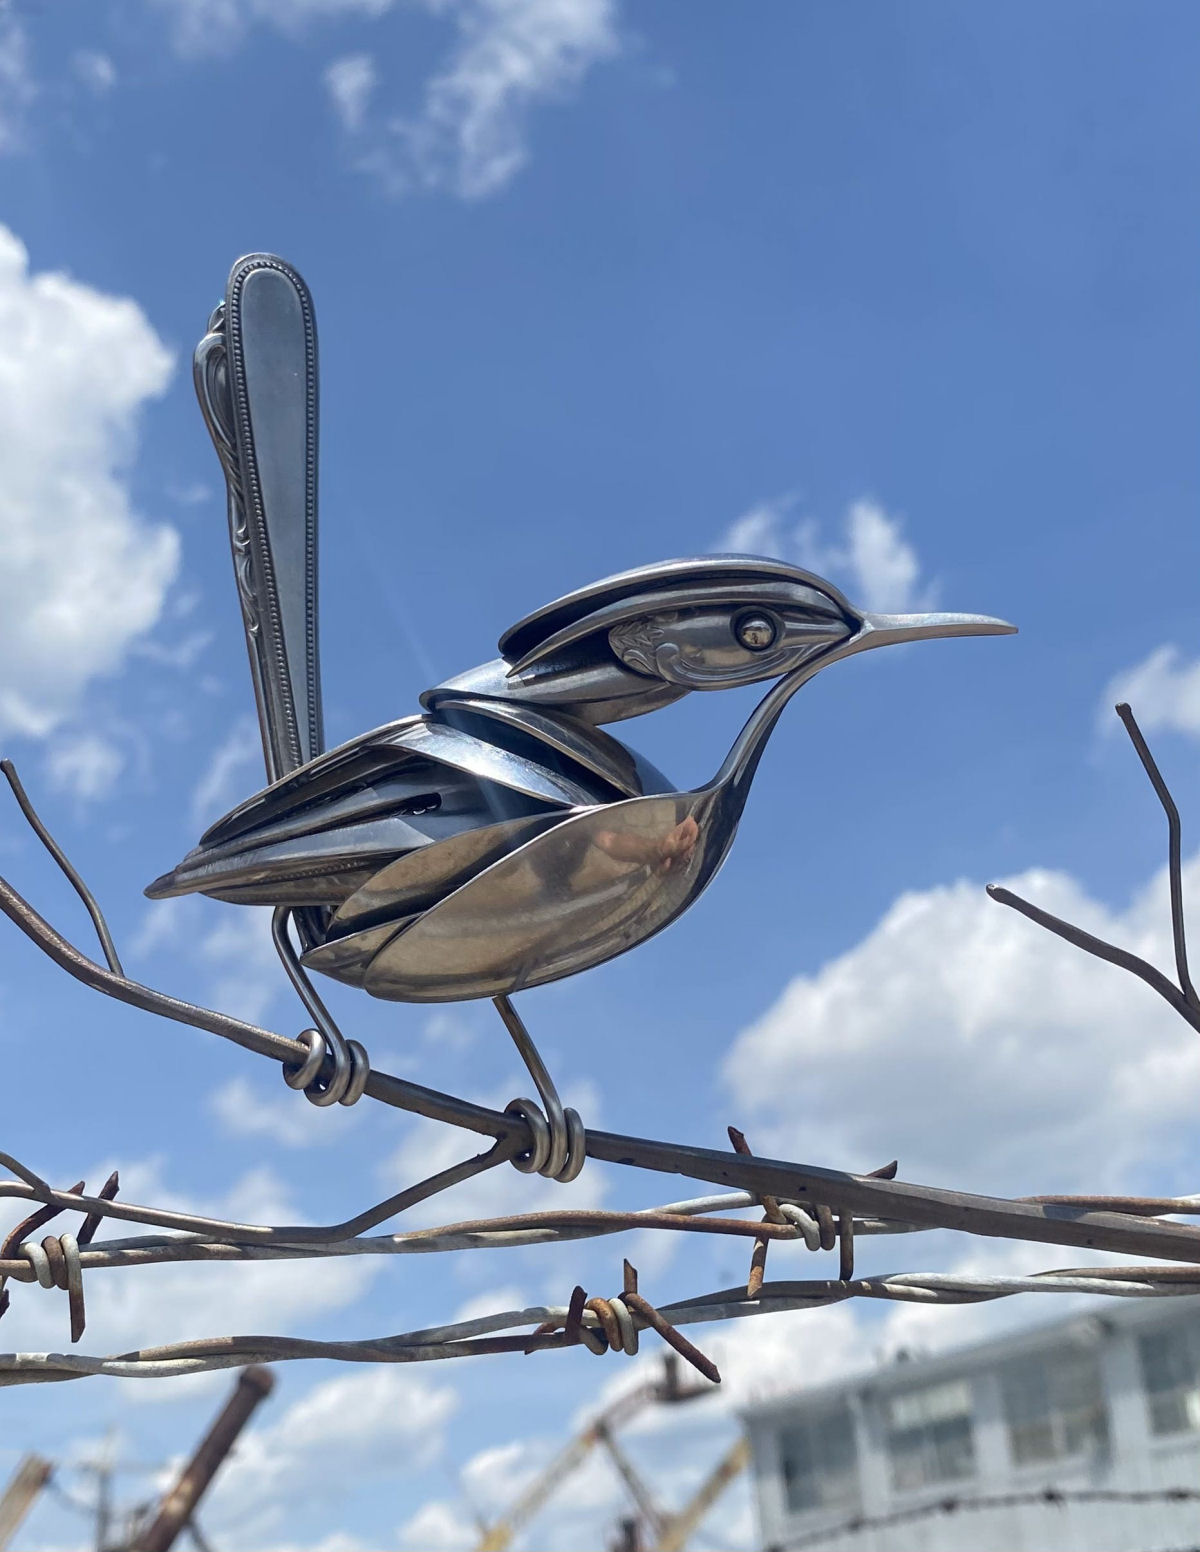 Sucata de utenslios  reciclada na forma de sublimes aves empoleiradas